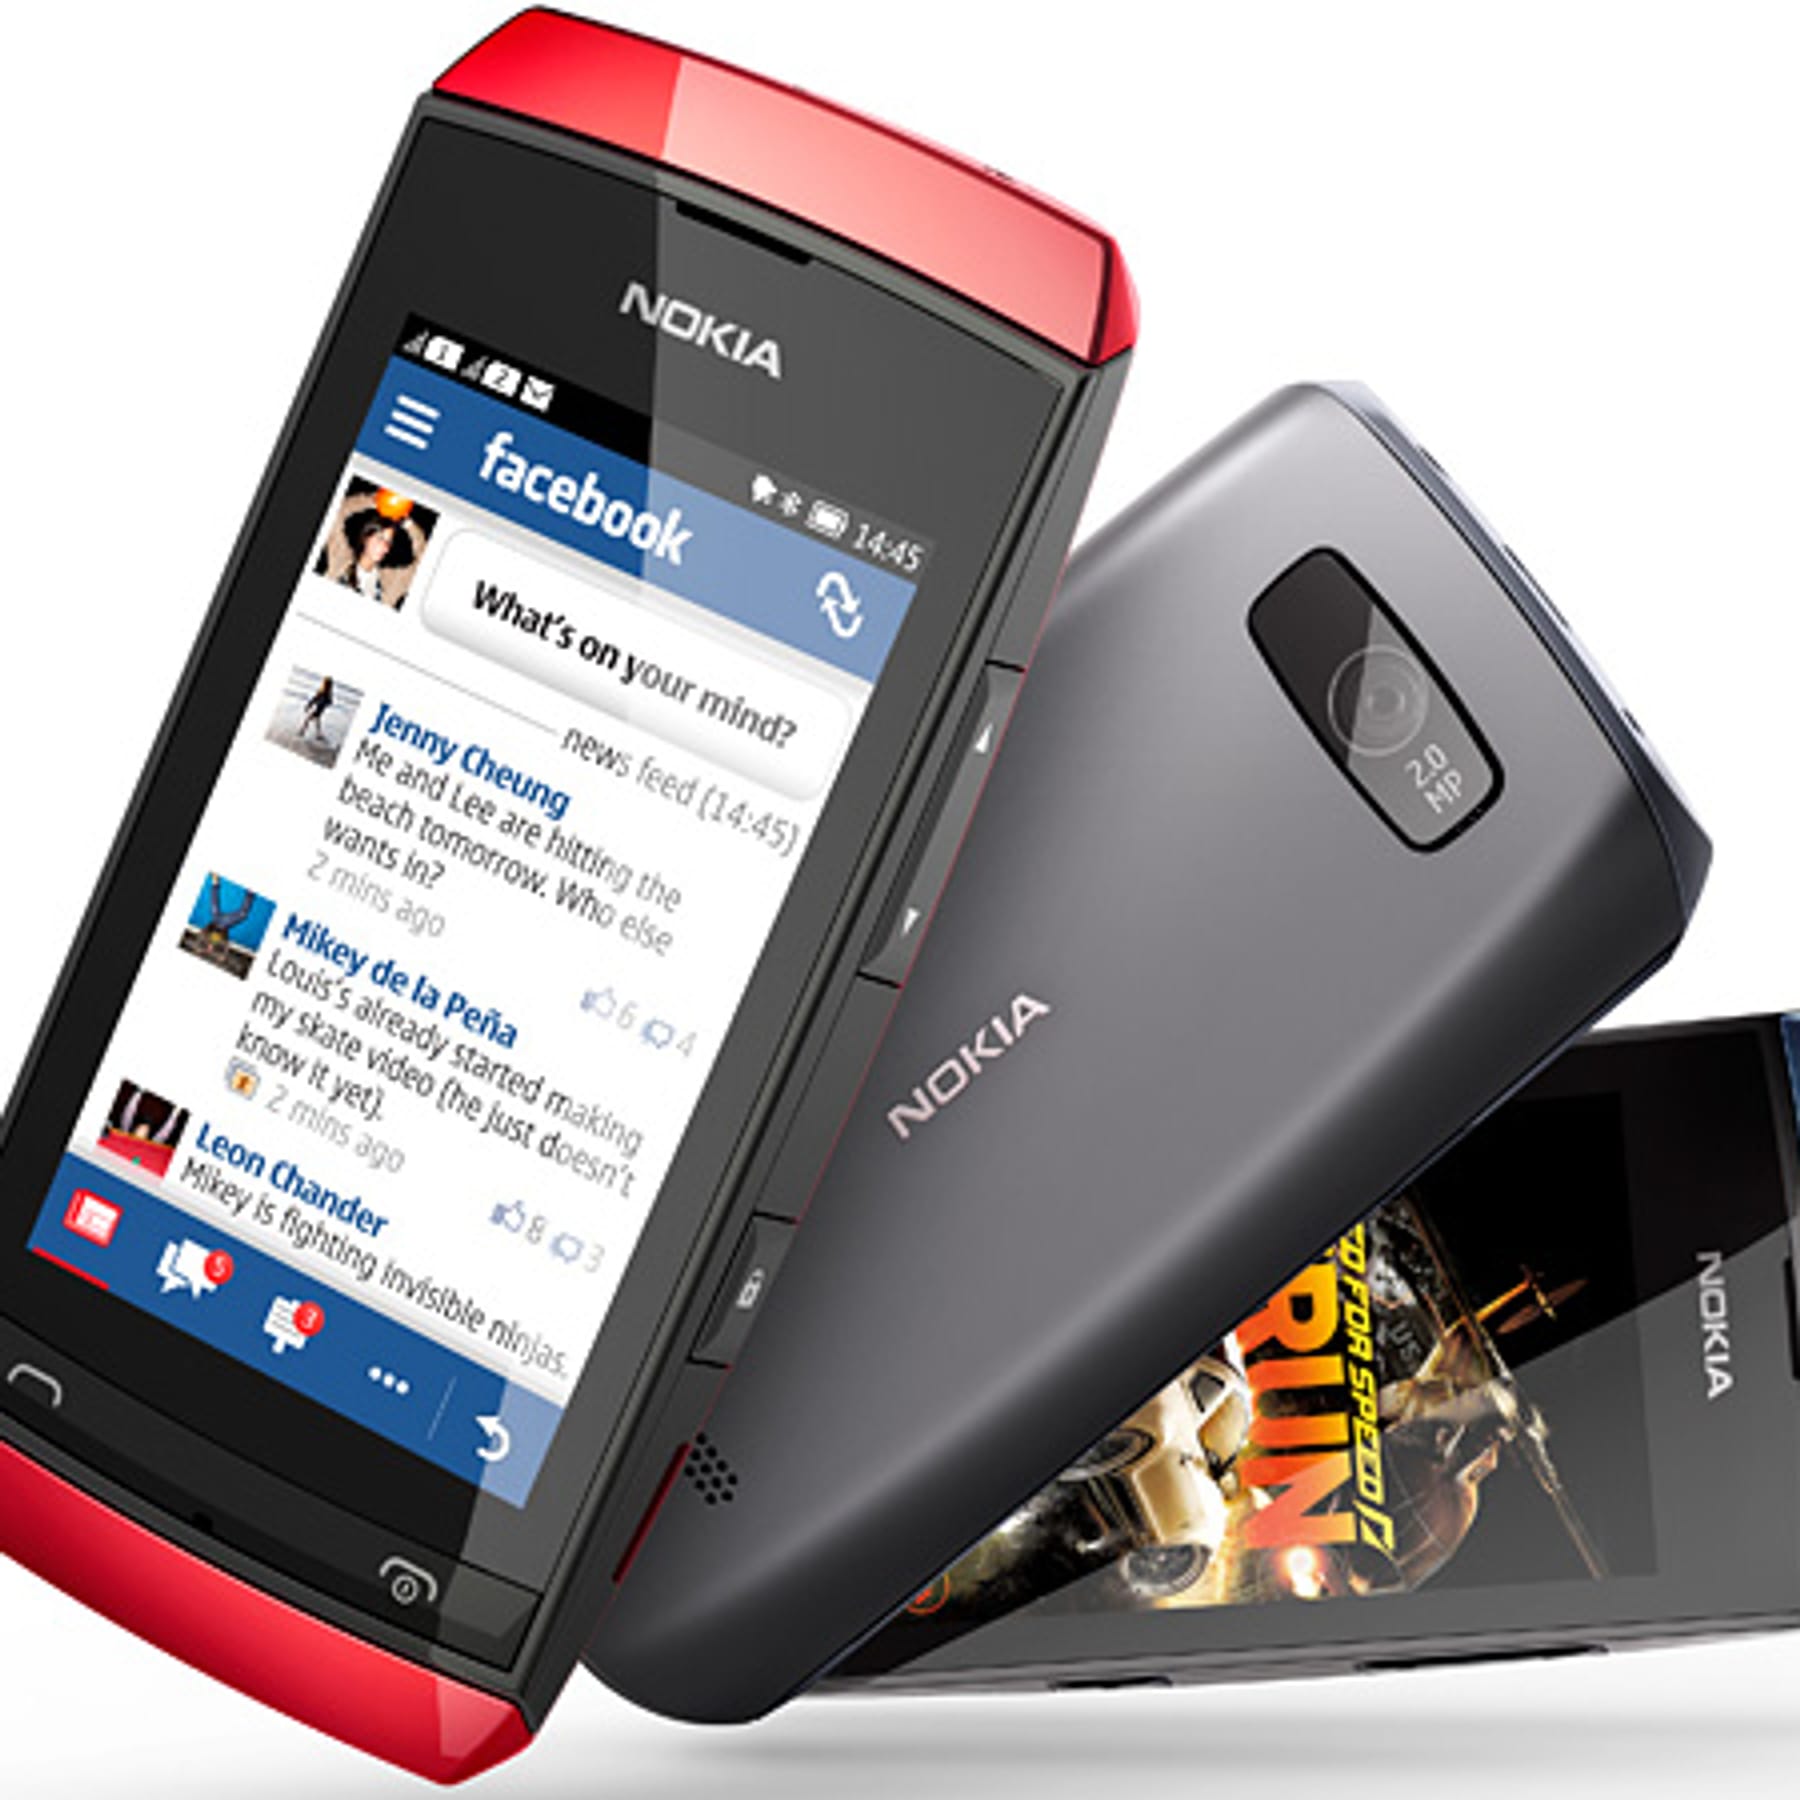 Strahlenbox - Abschirmbox für Mobilfunkstrahlung Ihres Handys